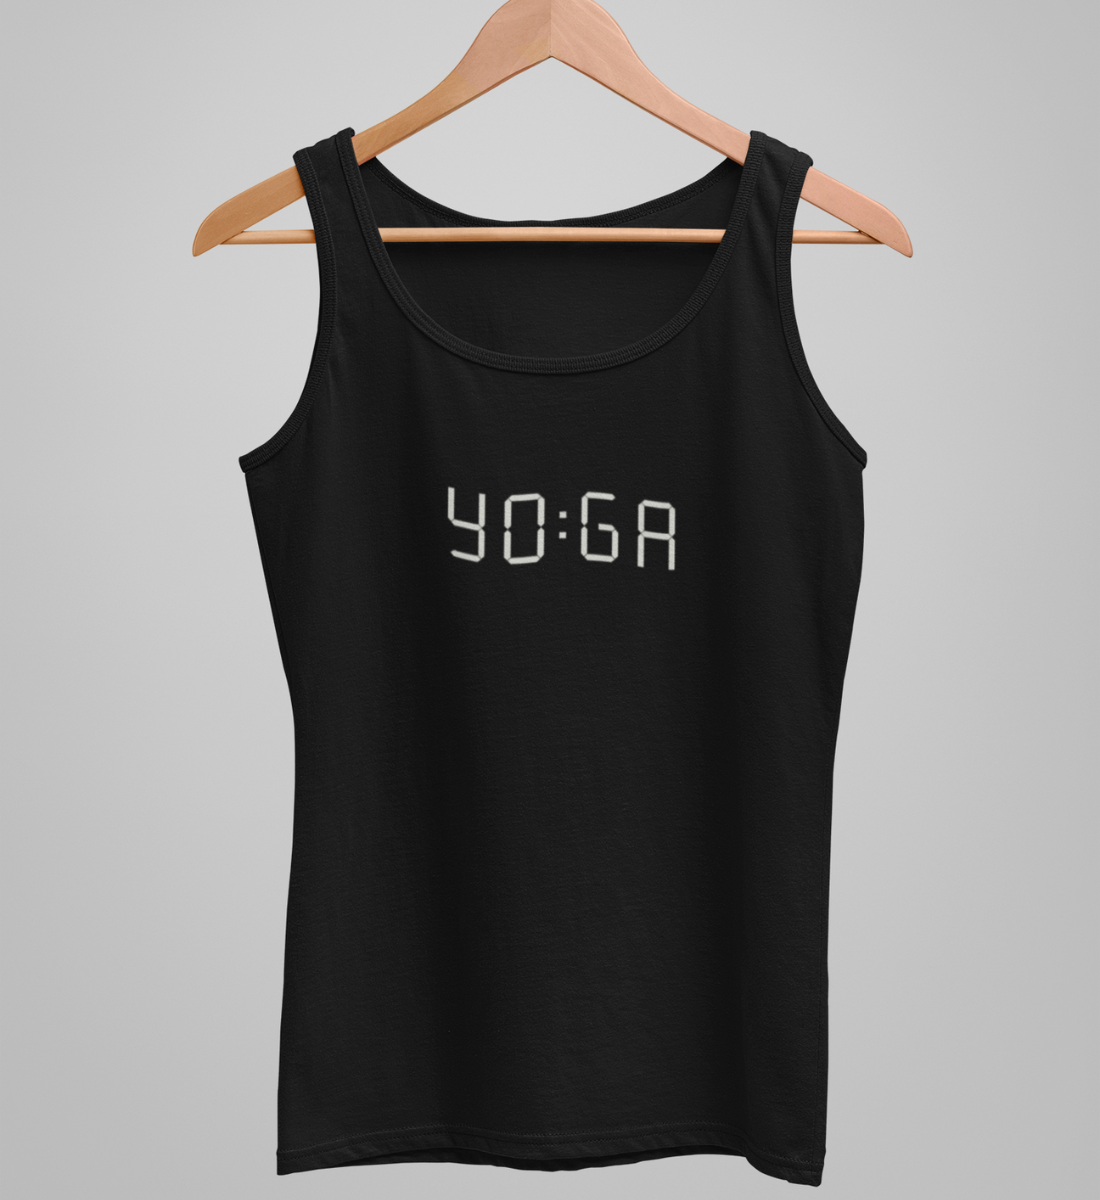 zeit für yoga l yoga top damen schwarz l bio top l yoga klamotten l ökologisch und umweltfreundliche produkte online shoppen